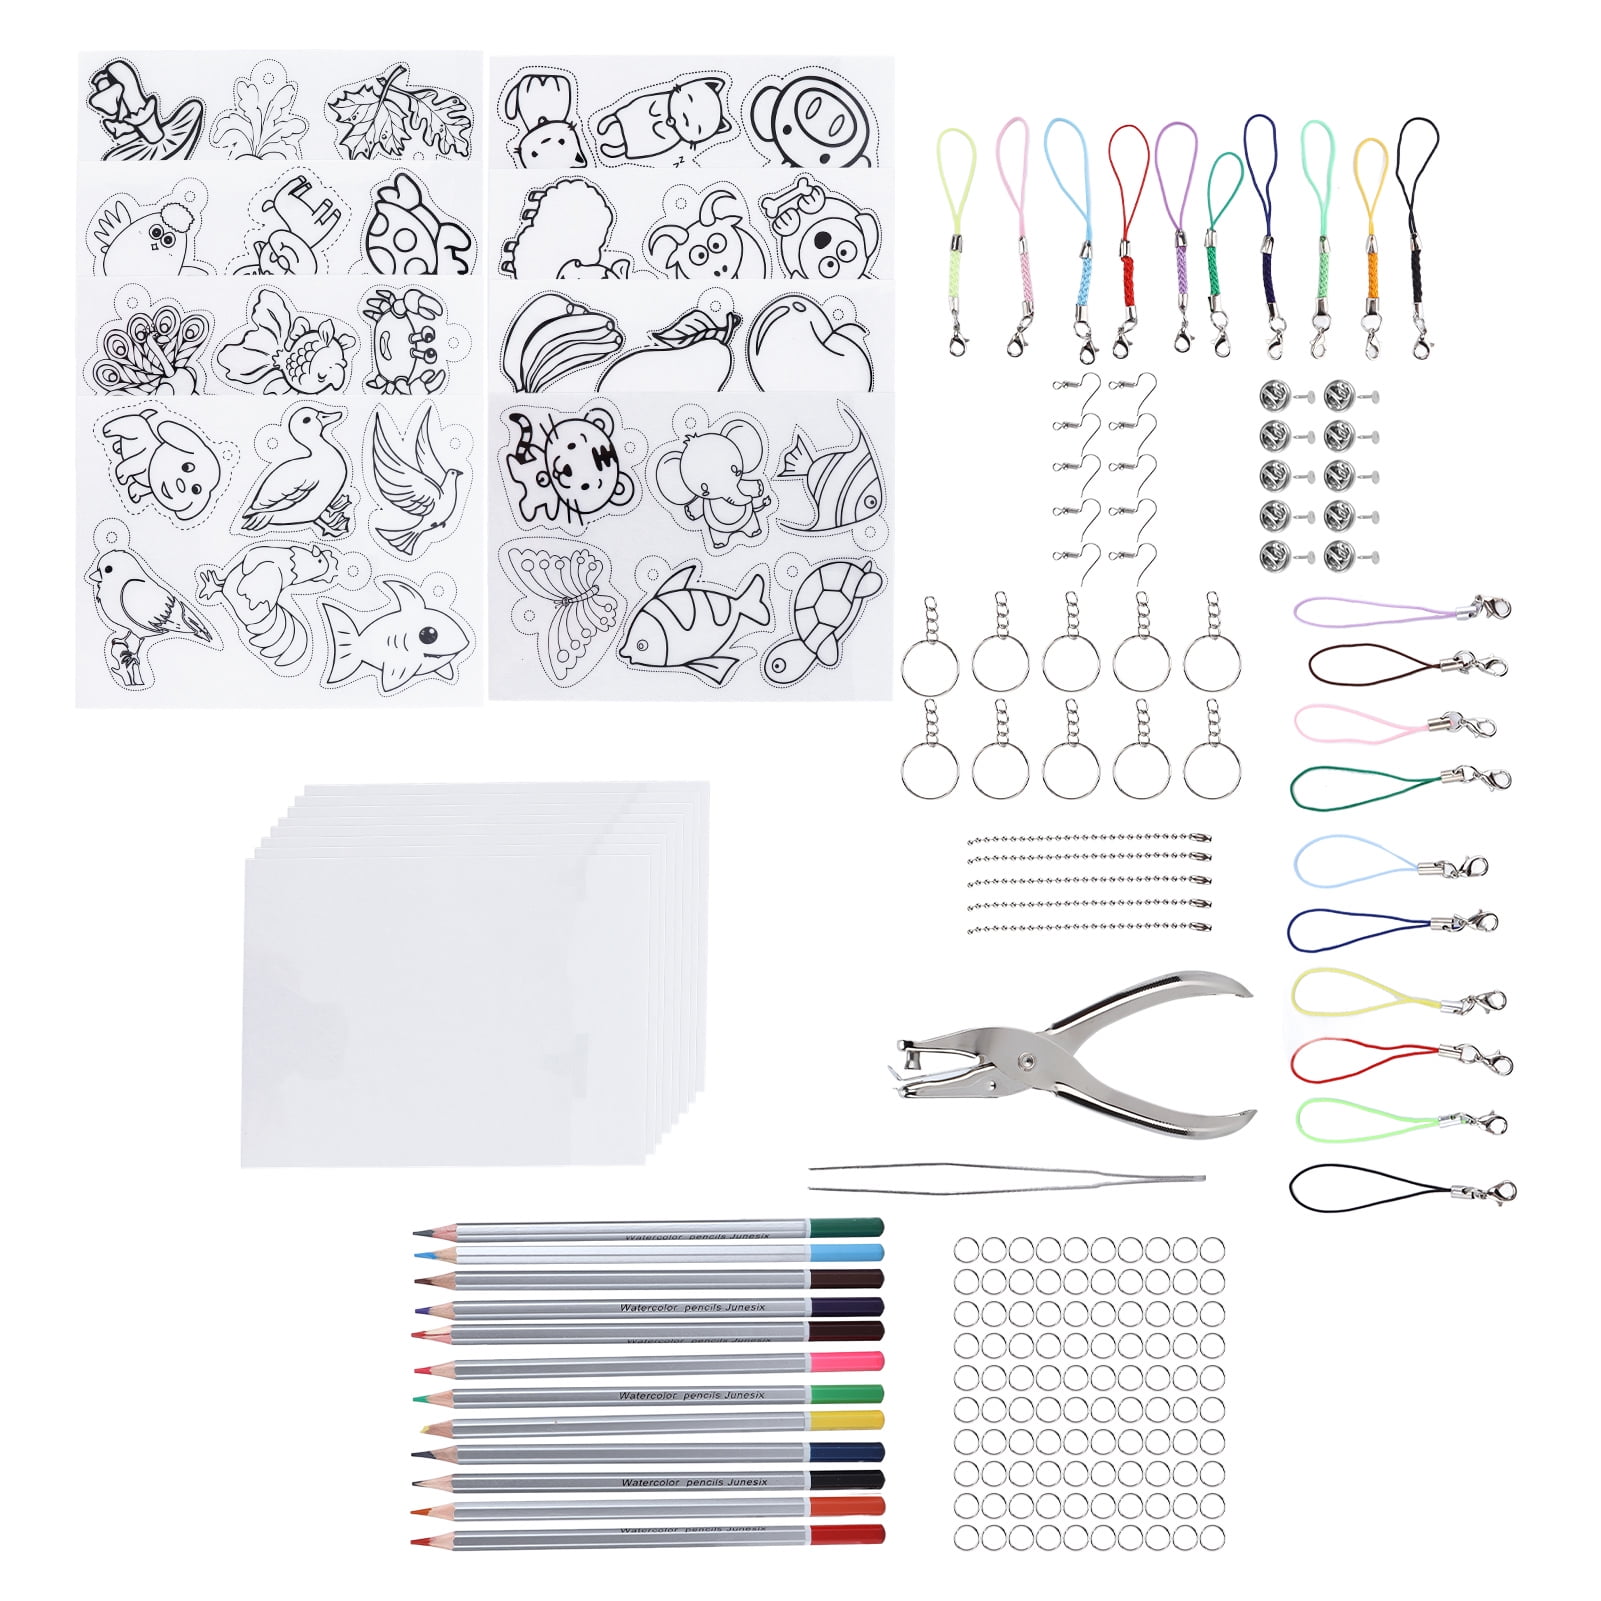 shynek Shrinky Sheets Kit, 125Pcs Heat Shrink Plastic Sheet Kit Including  20 Pcs Shrinky Art Paper, Hole Punch, Pencils